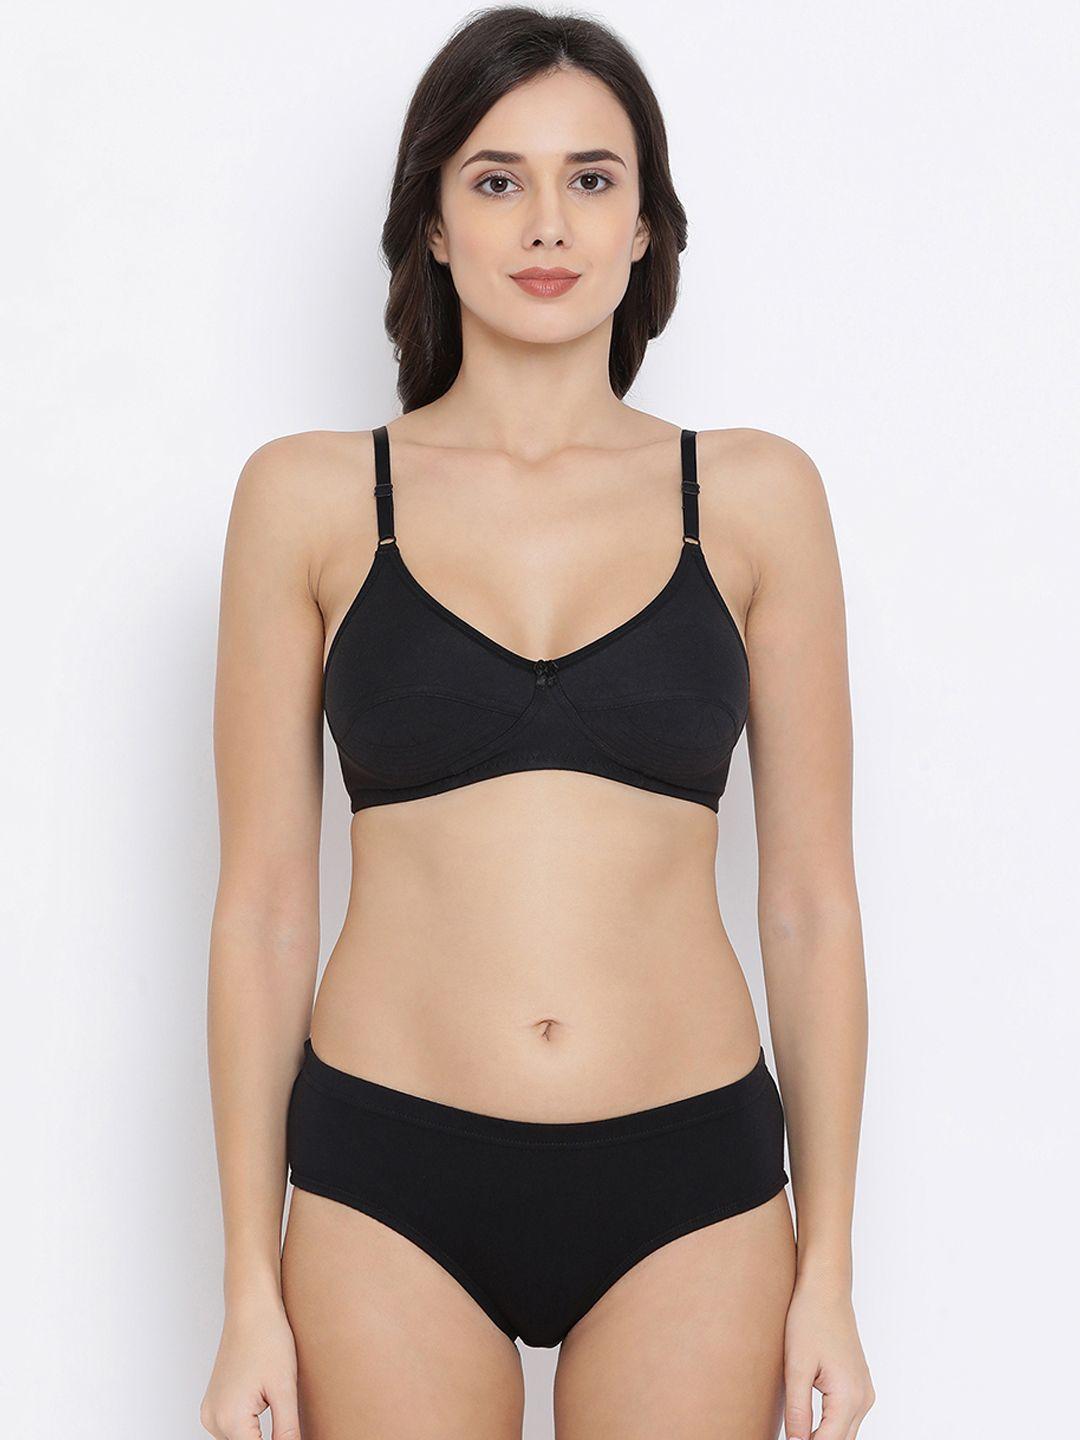 clovia women black solid lingerie set combbp82632b